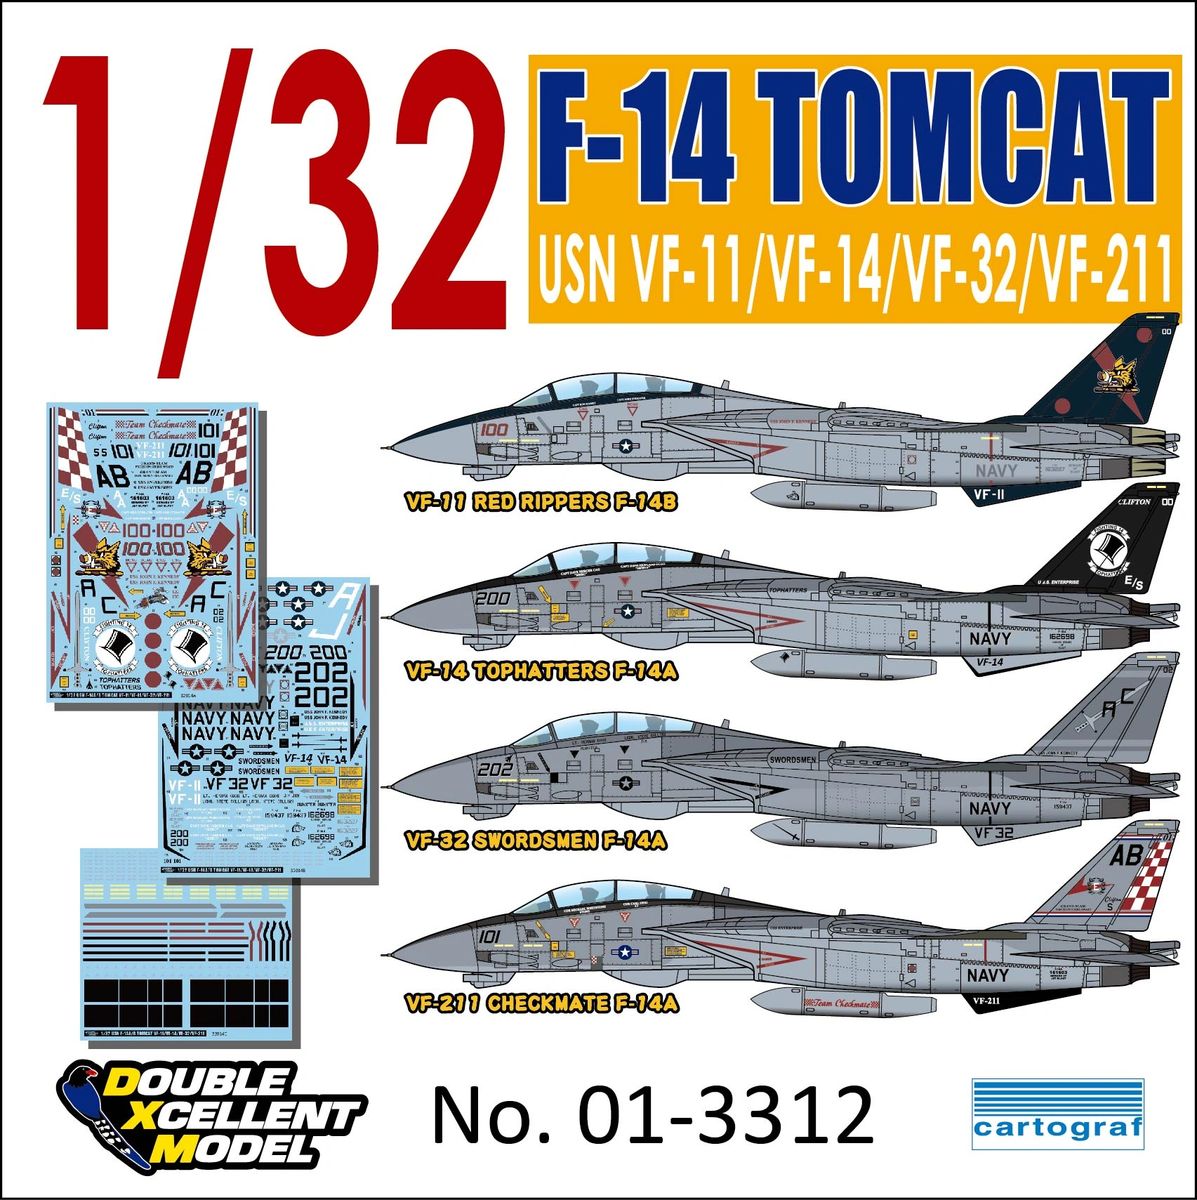 FCM] Decalque 032-32 F-14A VF-32 Swordsmen Escala 1/32